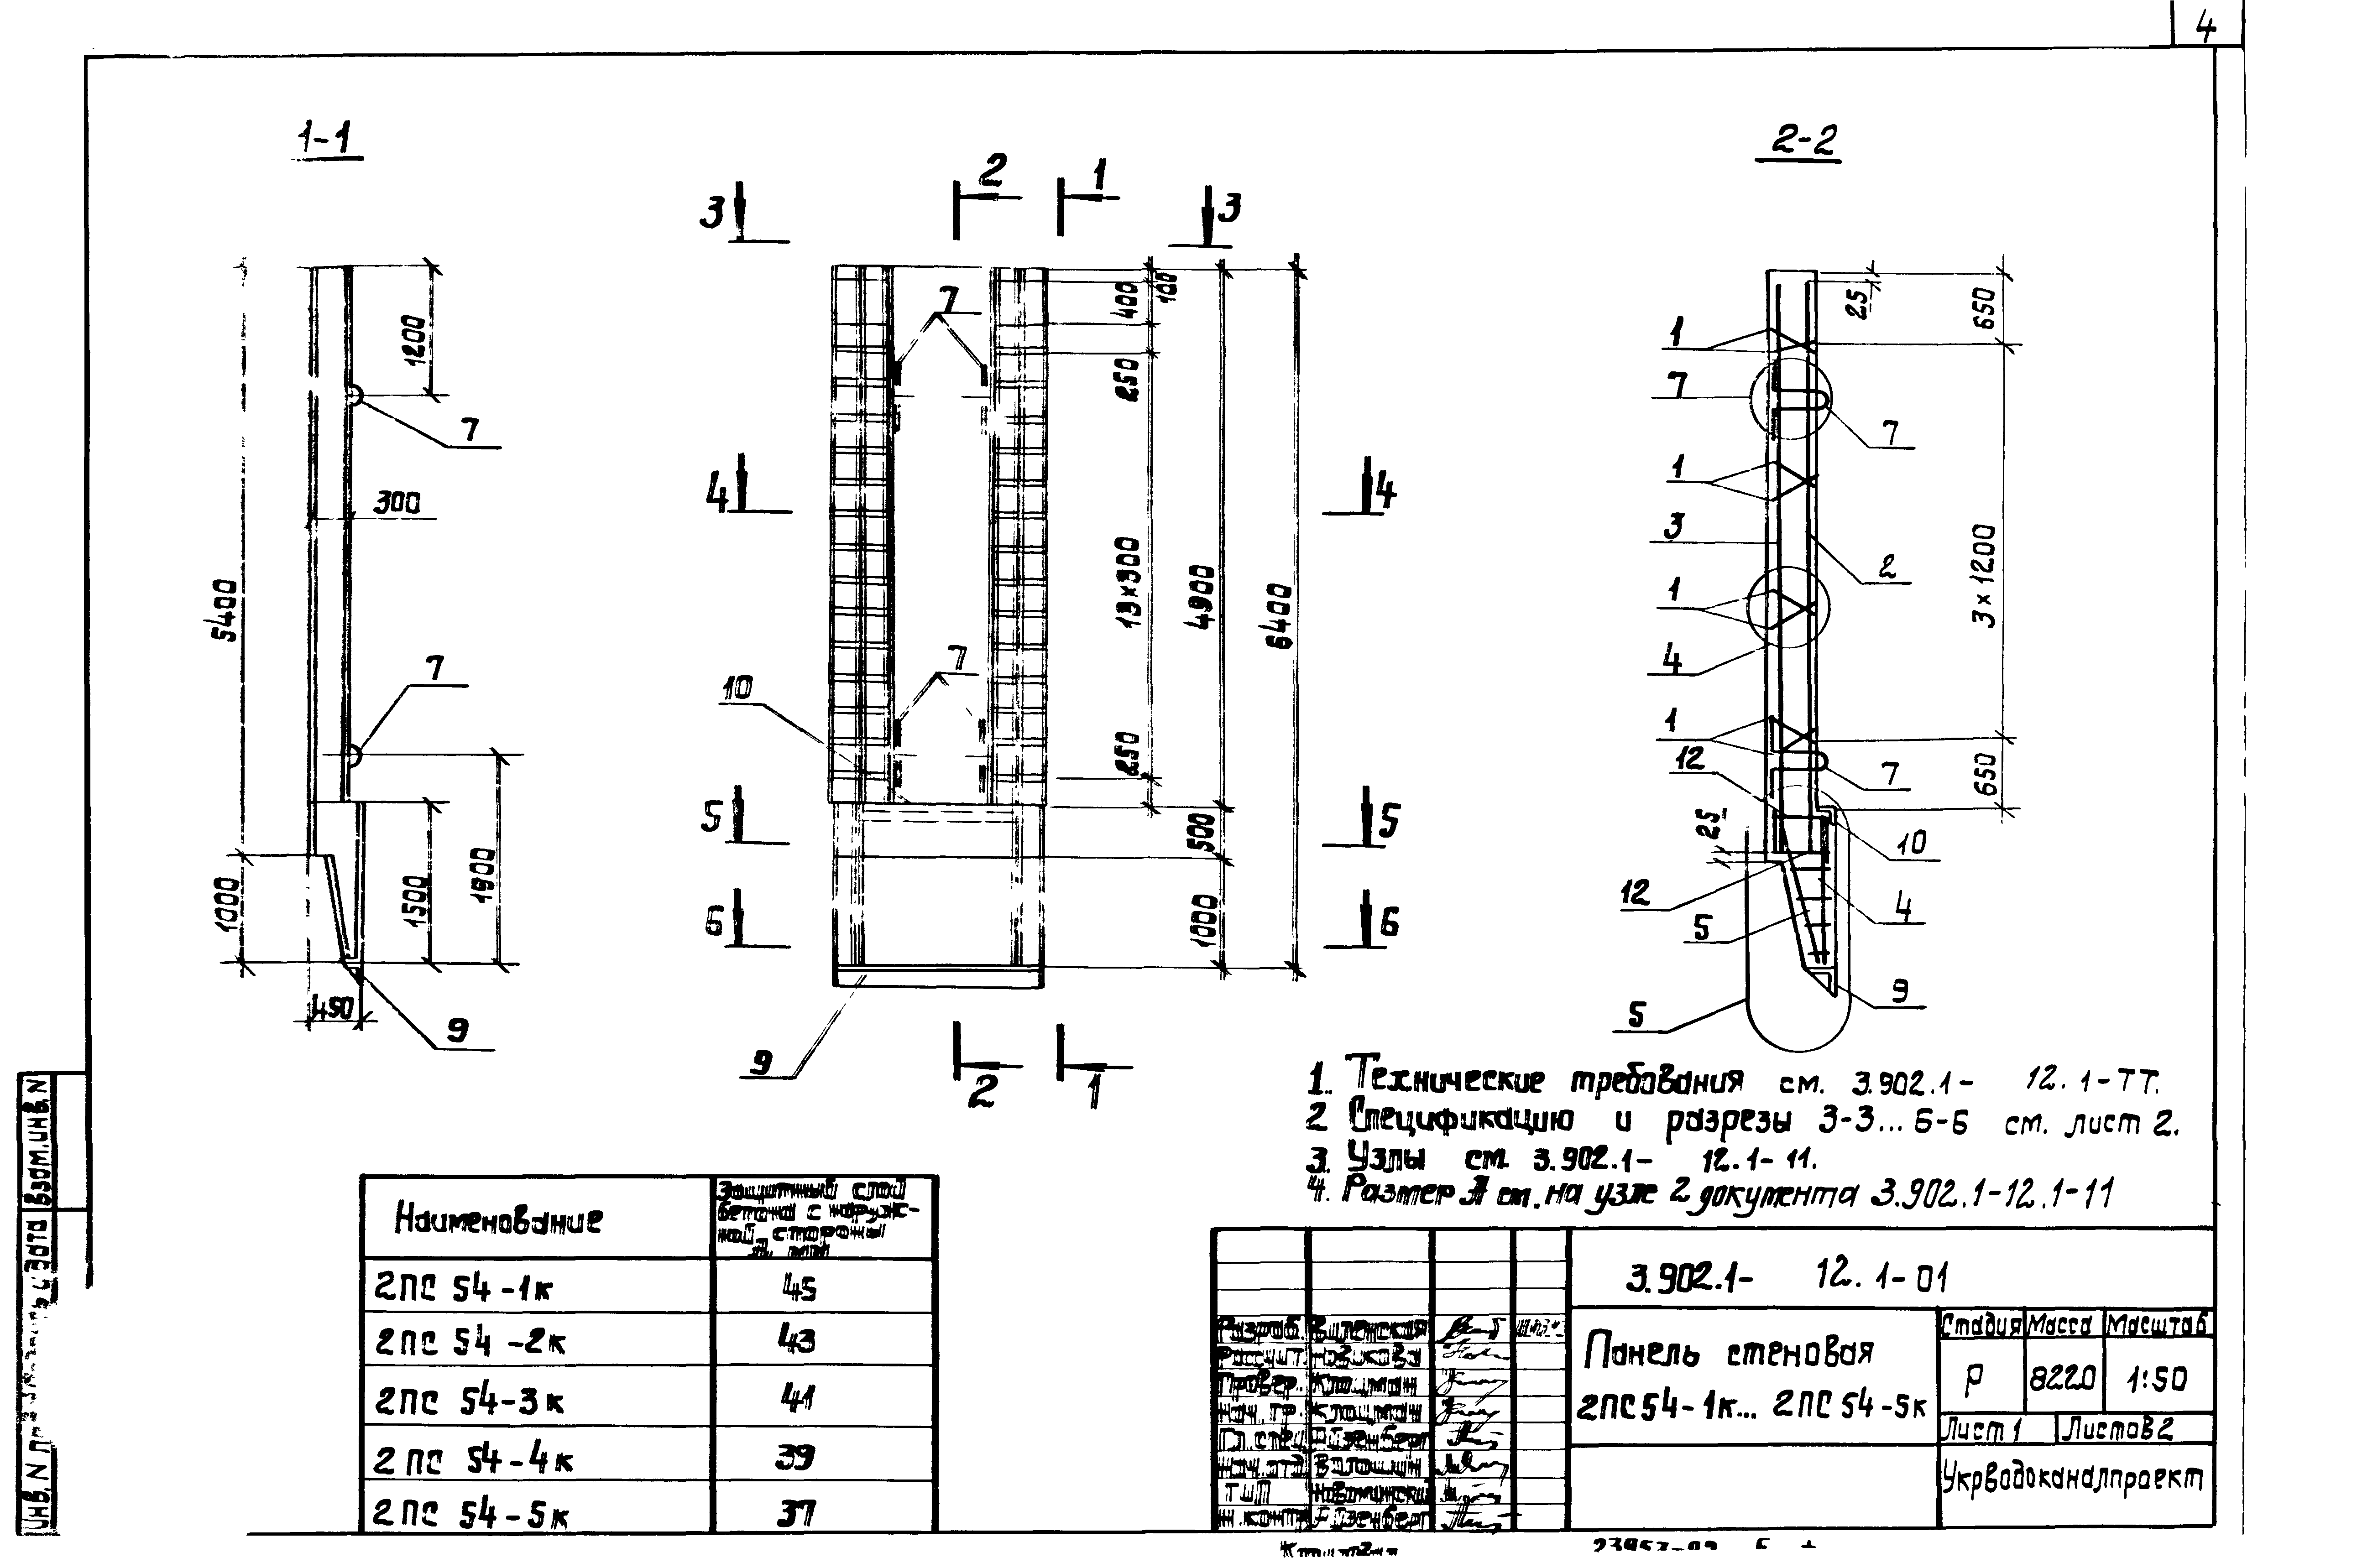 Панель стеновая 2ПС54-2к Серия 3.902.1-12, вып.1